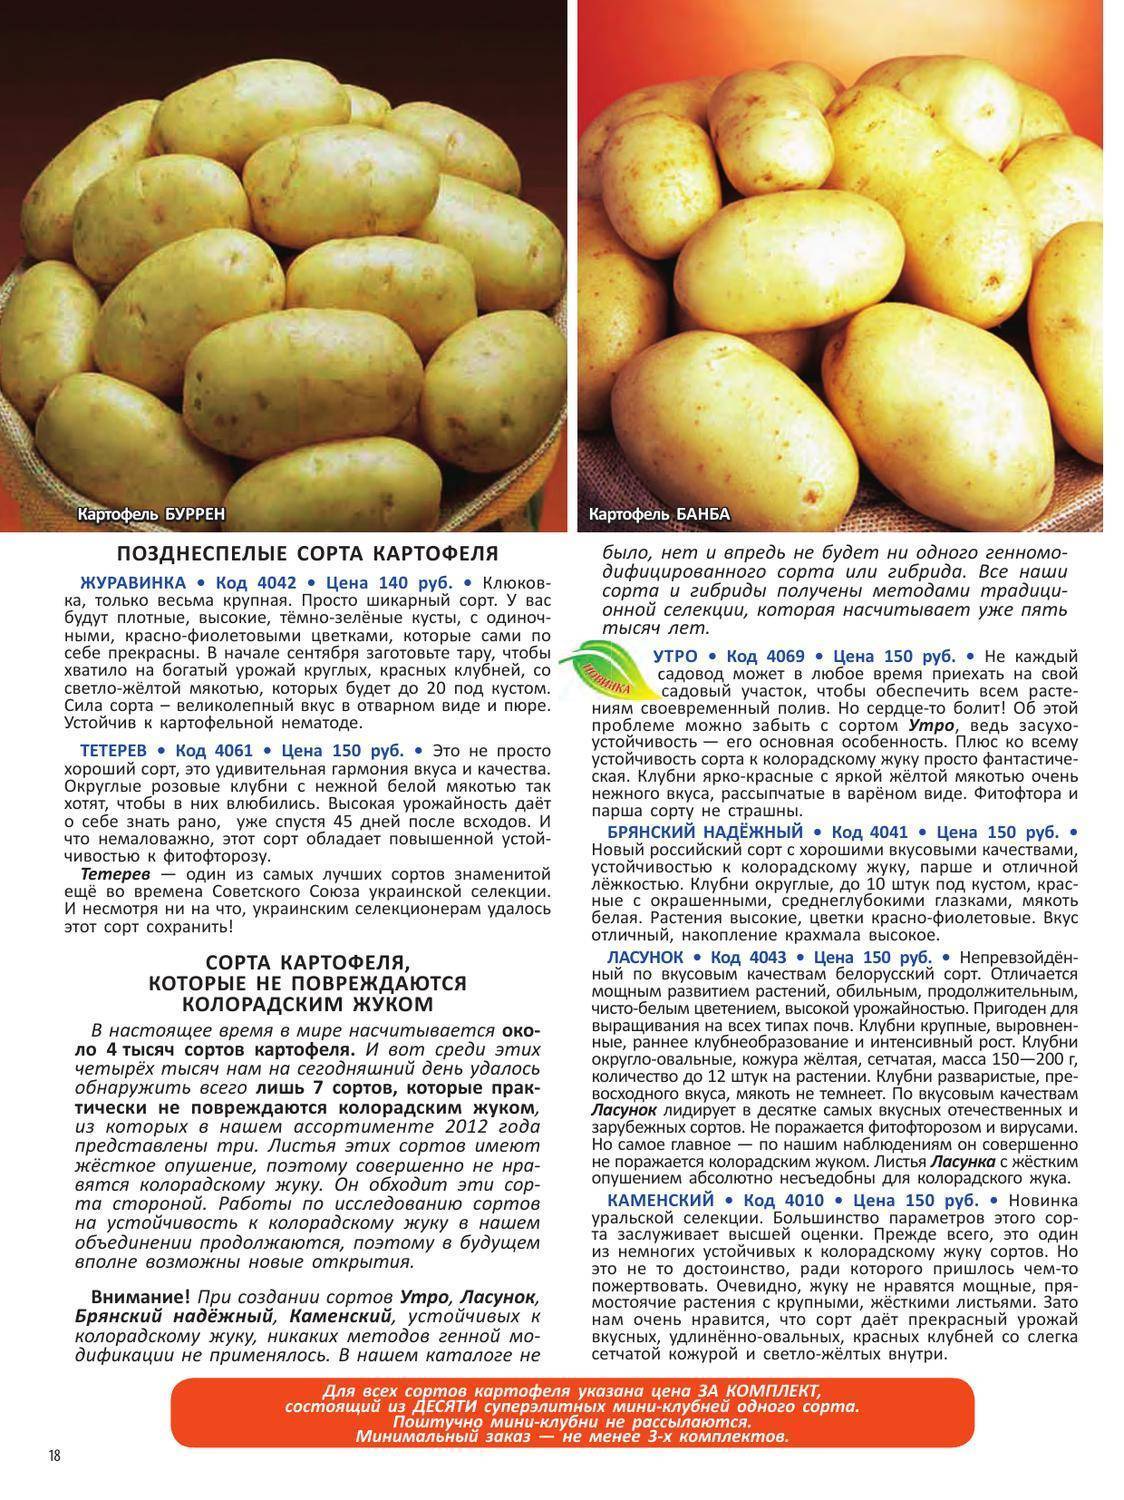 Картофель «романо»: описание сорта и особенности выращивания